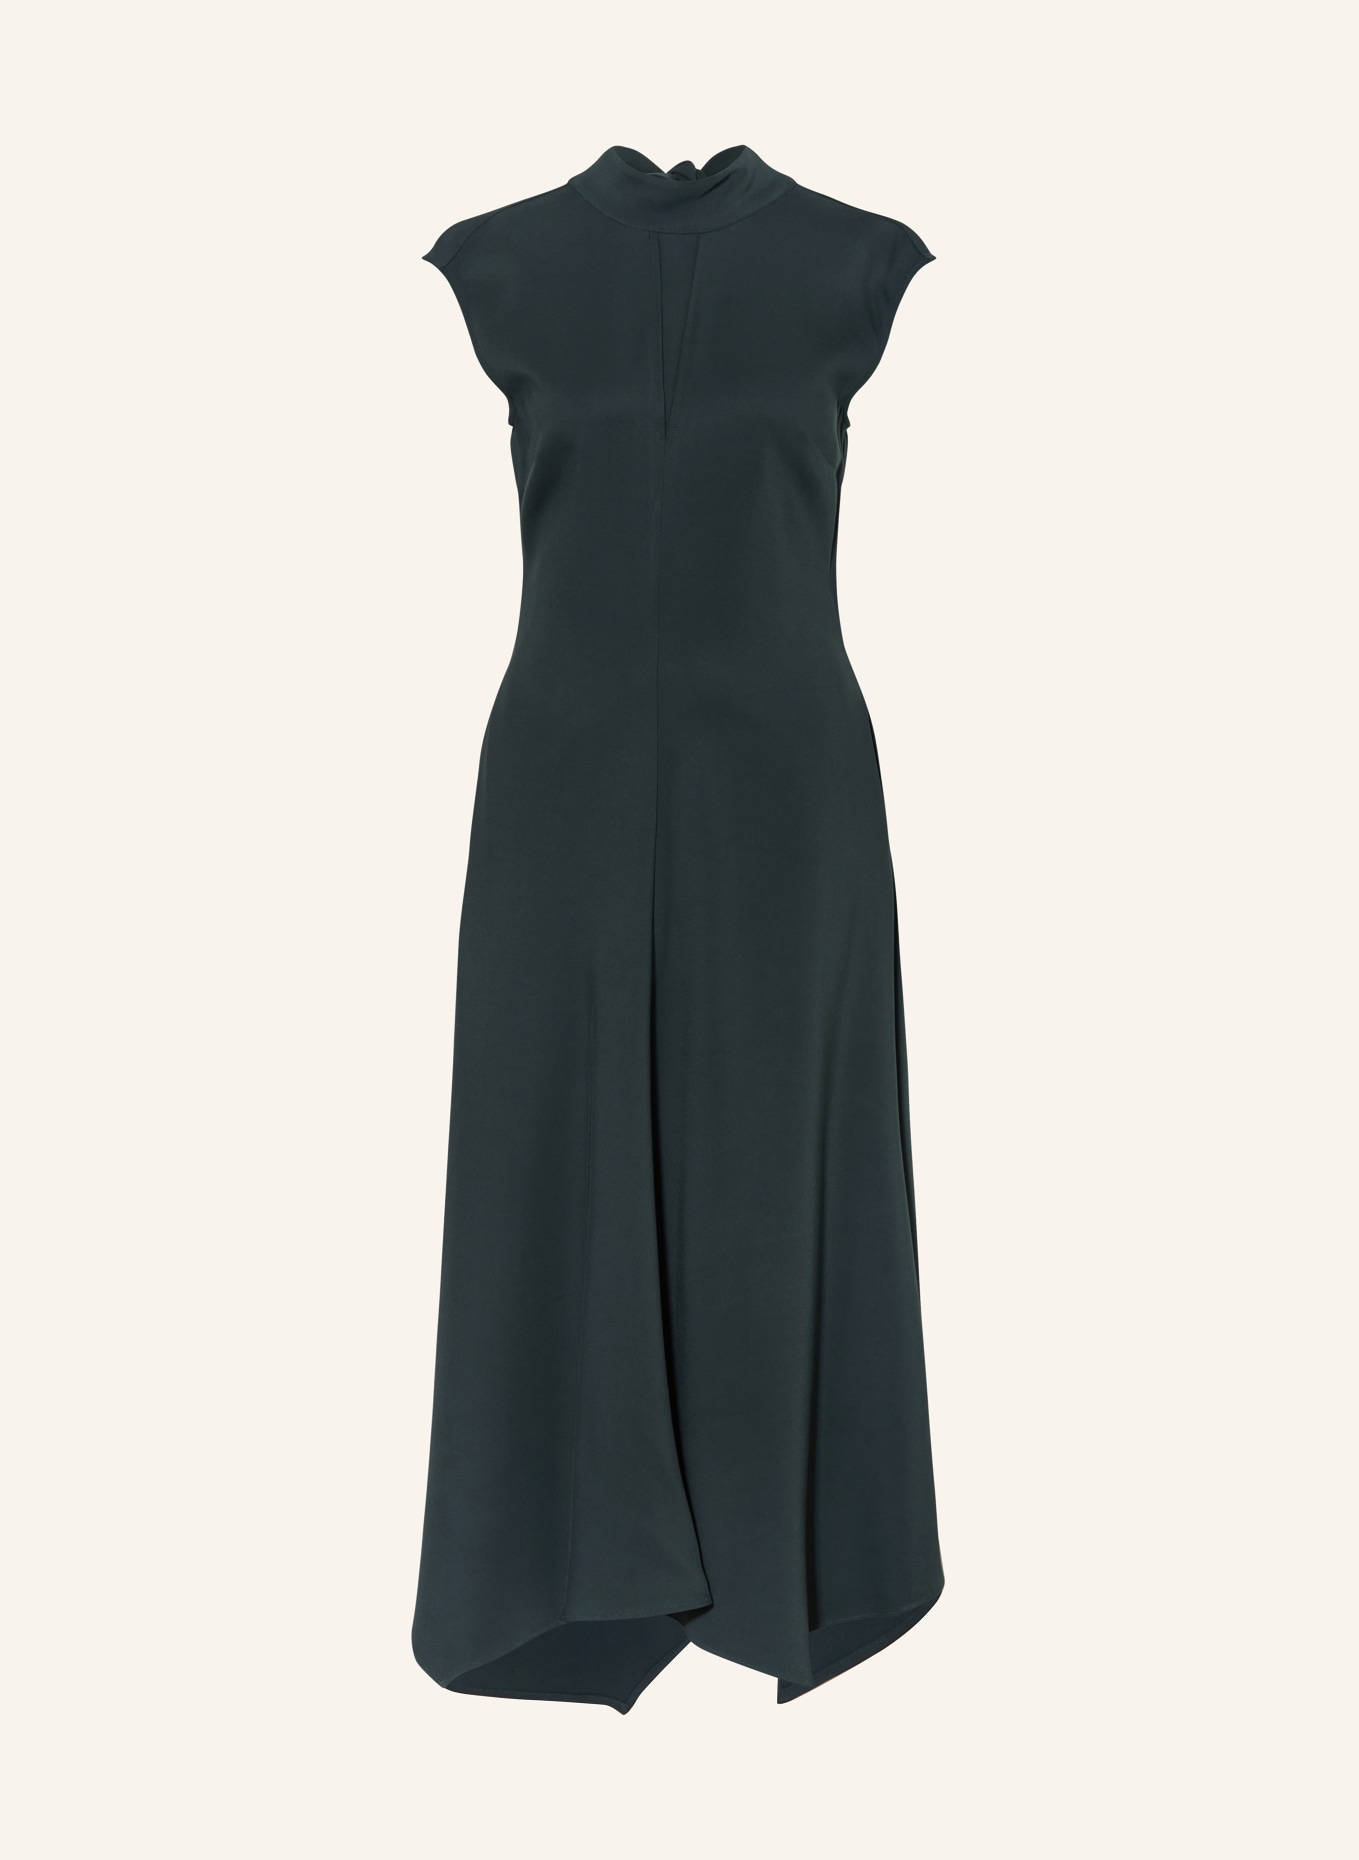 REISS Kleid LIBBY, Farbe: DUNKELGRÜN (Bild 1)